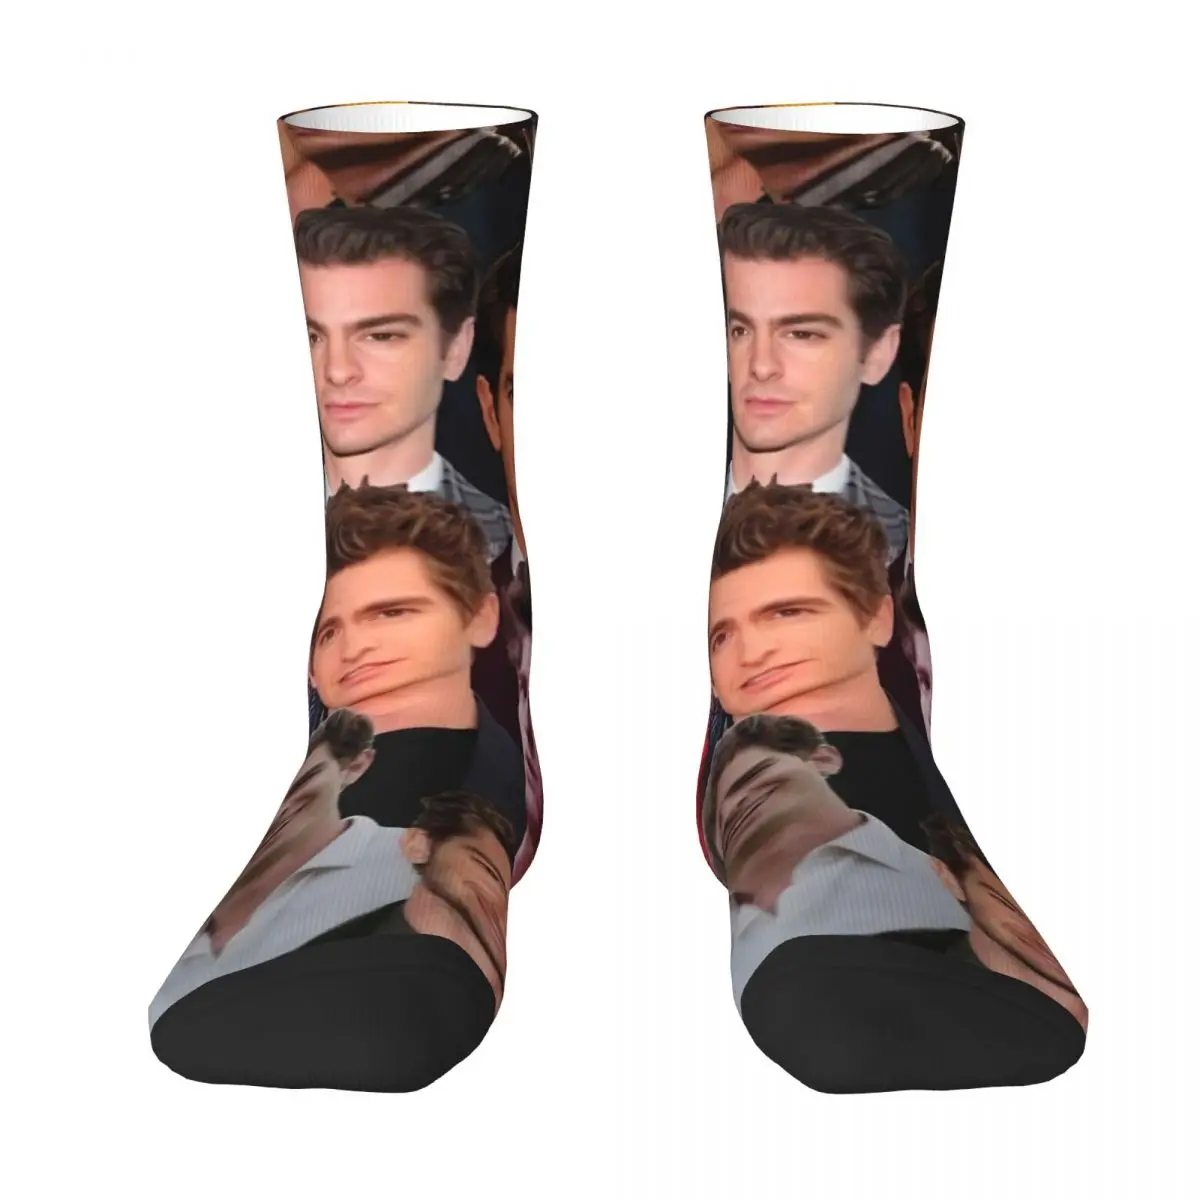 Andrew Garfield Collage Adult Socks Unisex socks,men Socks women Socks